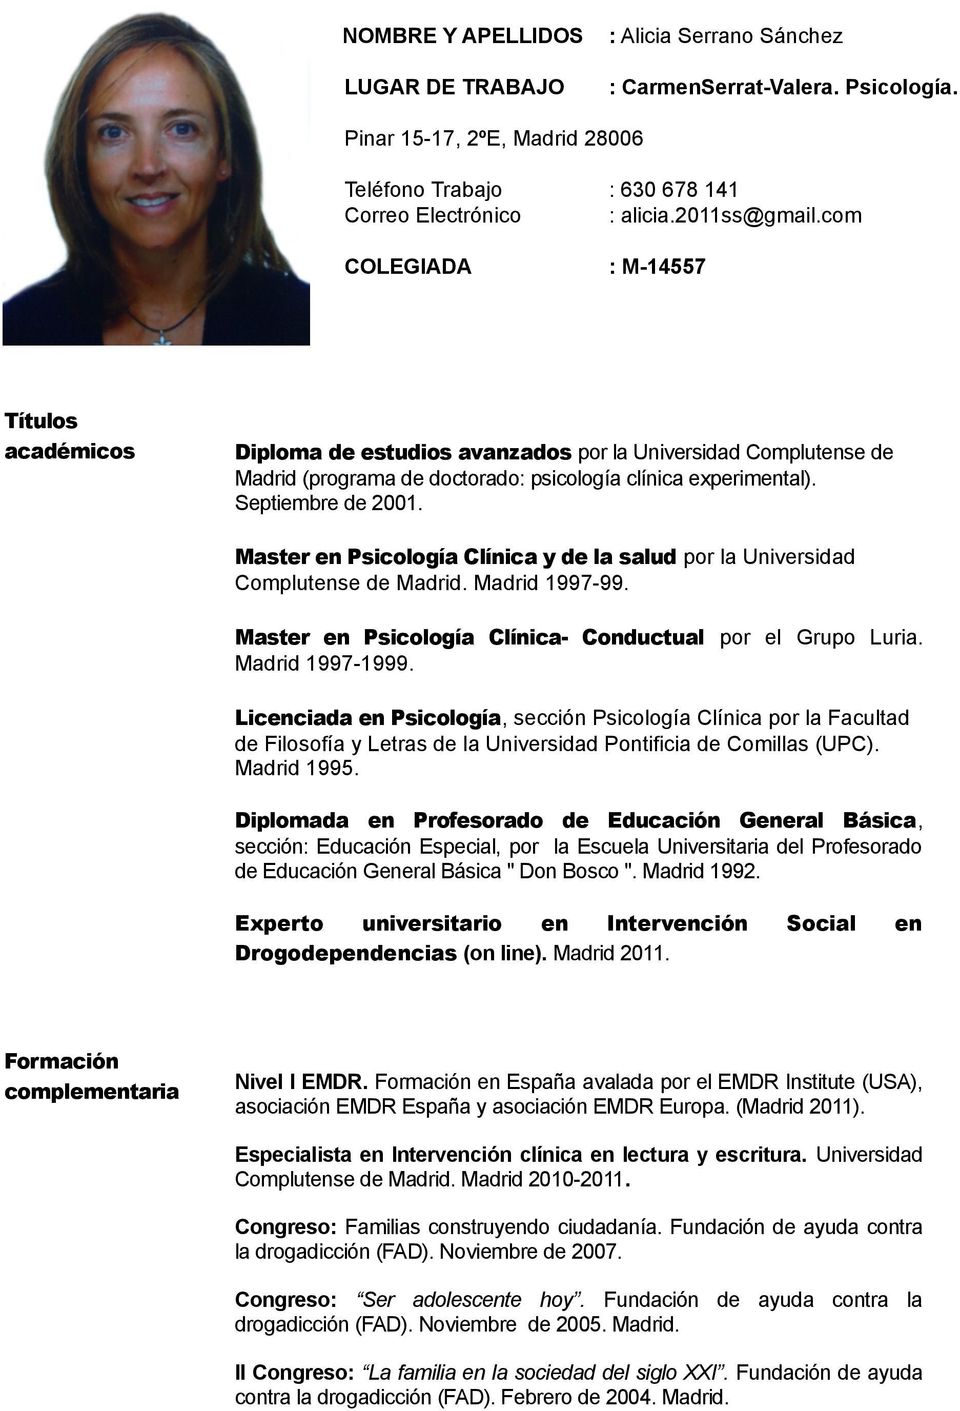 Master en Psicología Clínica y de la salud por la Universidad Complutense de Madrid. Madrid 1997-99. Master en Psicología Clínica- Conductual por el Grupo Luria. Madrid 1997-1999.